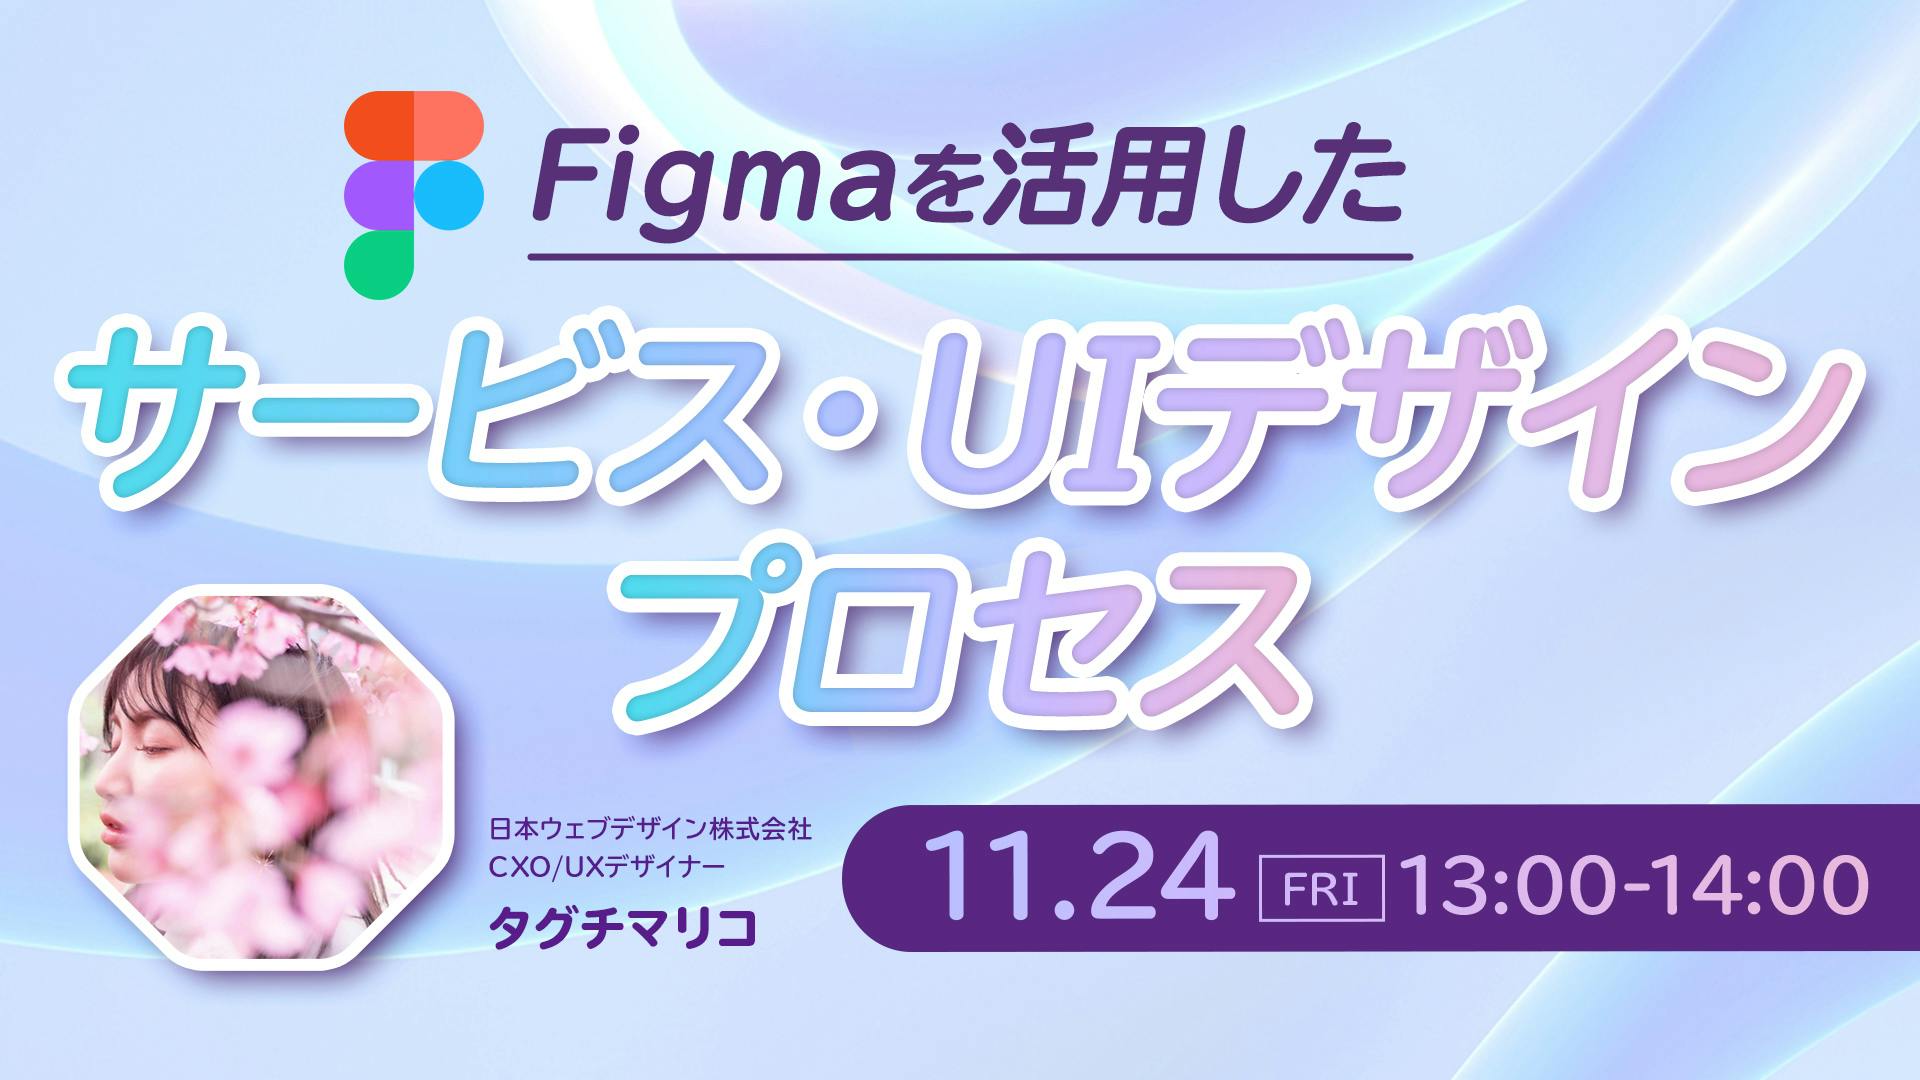 【無料ウェビナー】Figmaを活用したサービス・UIデザインプロセス